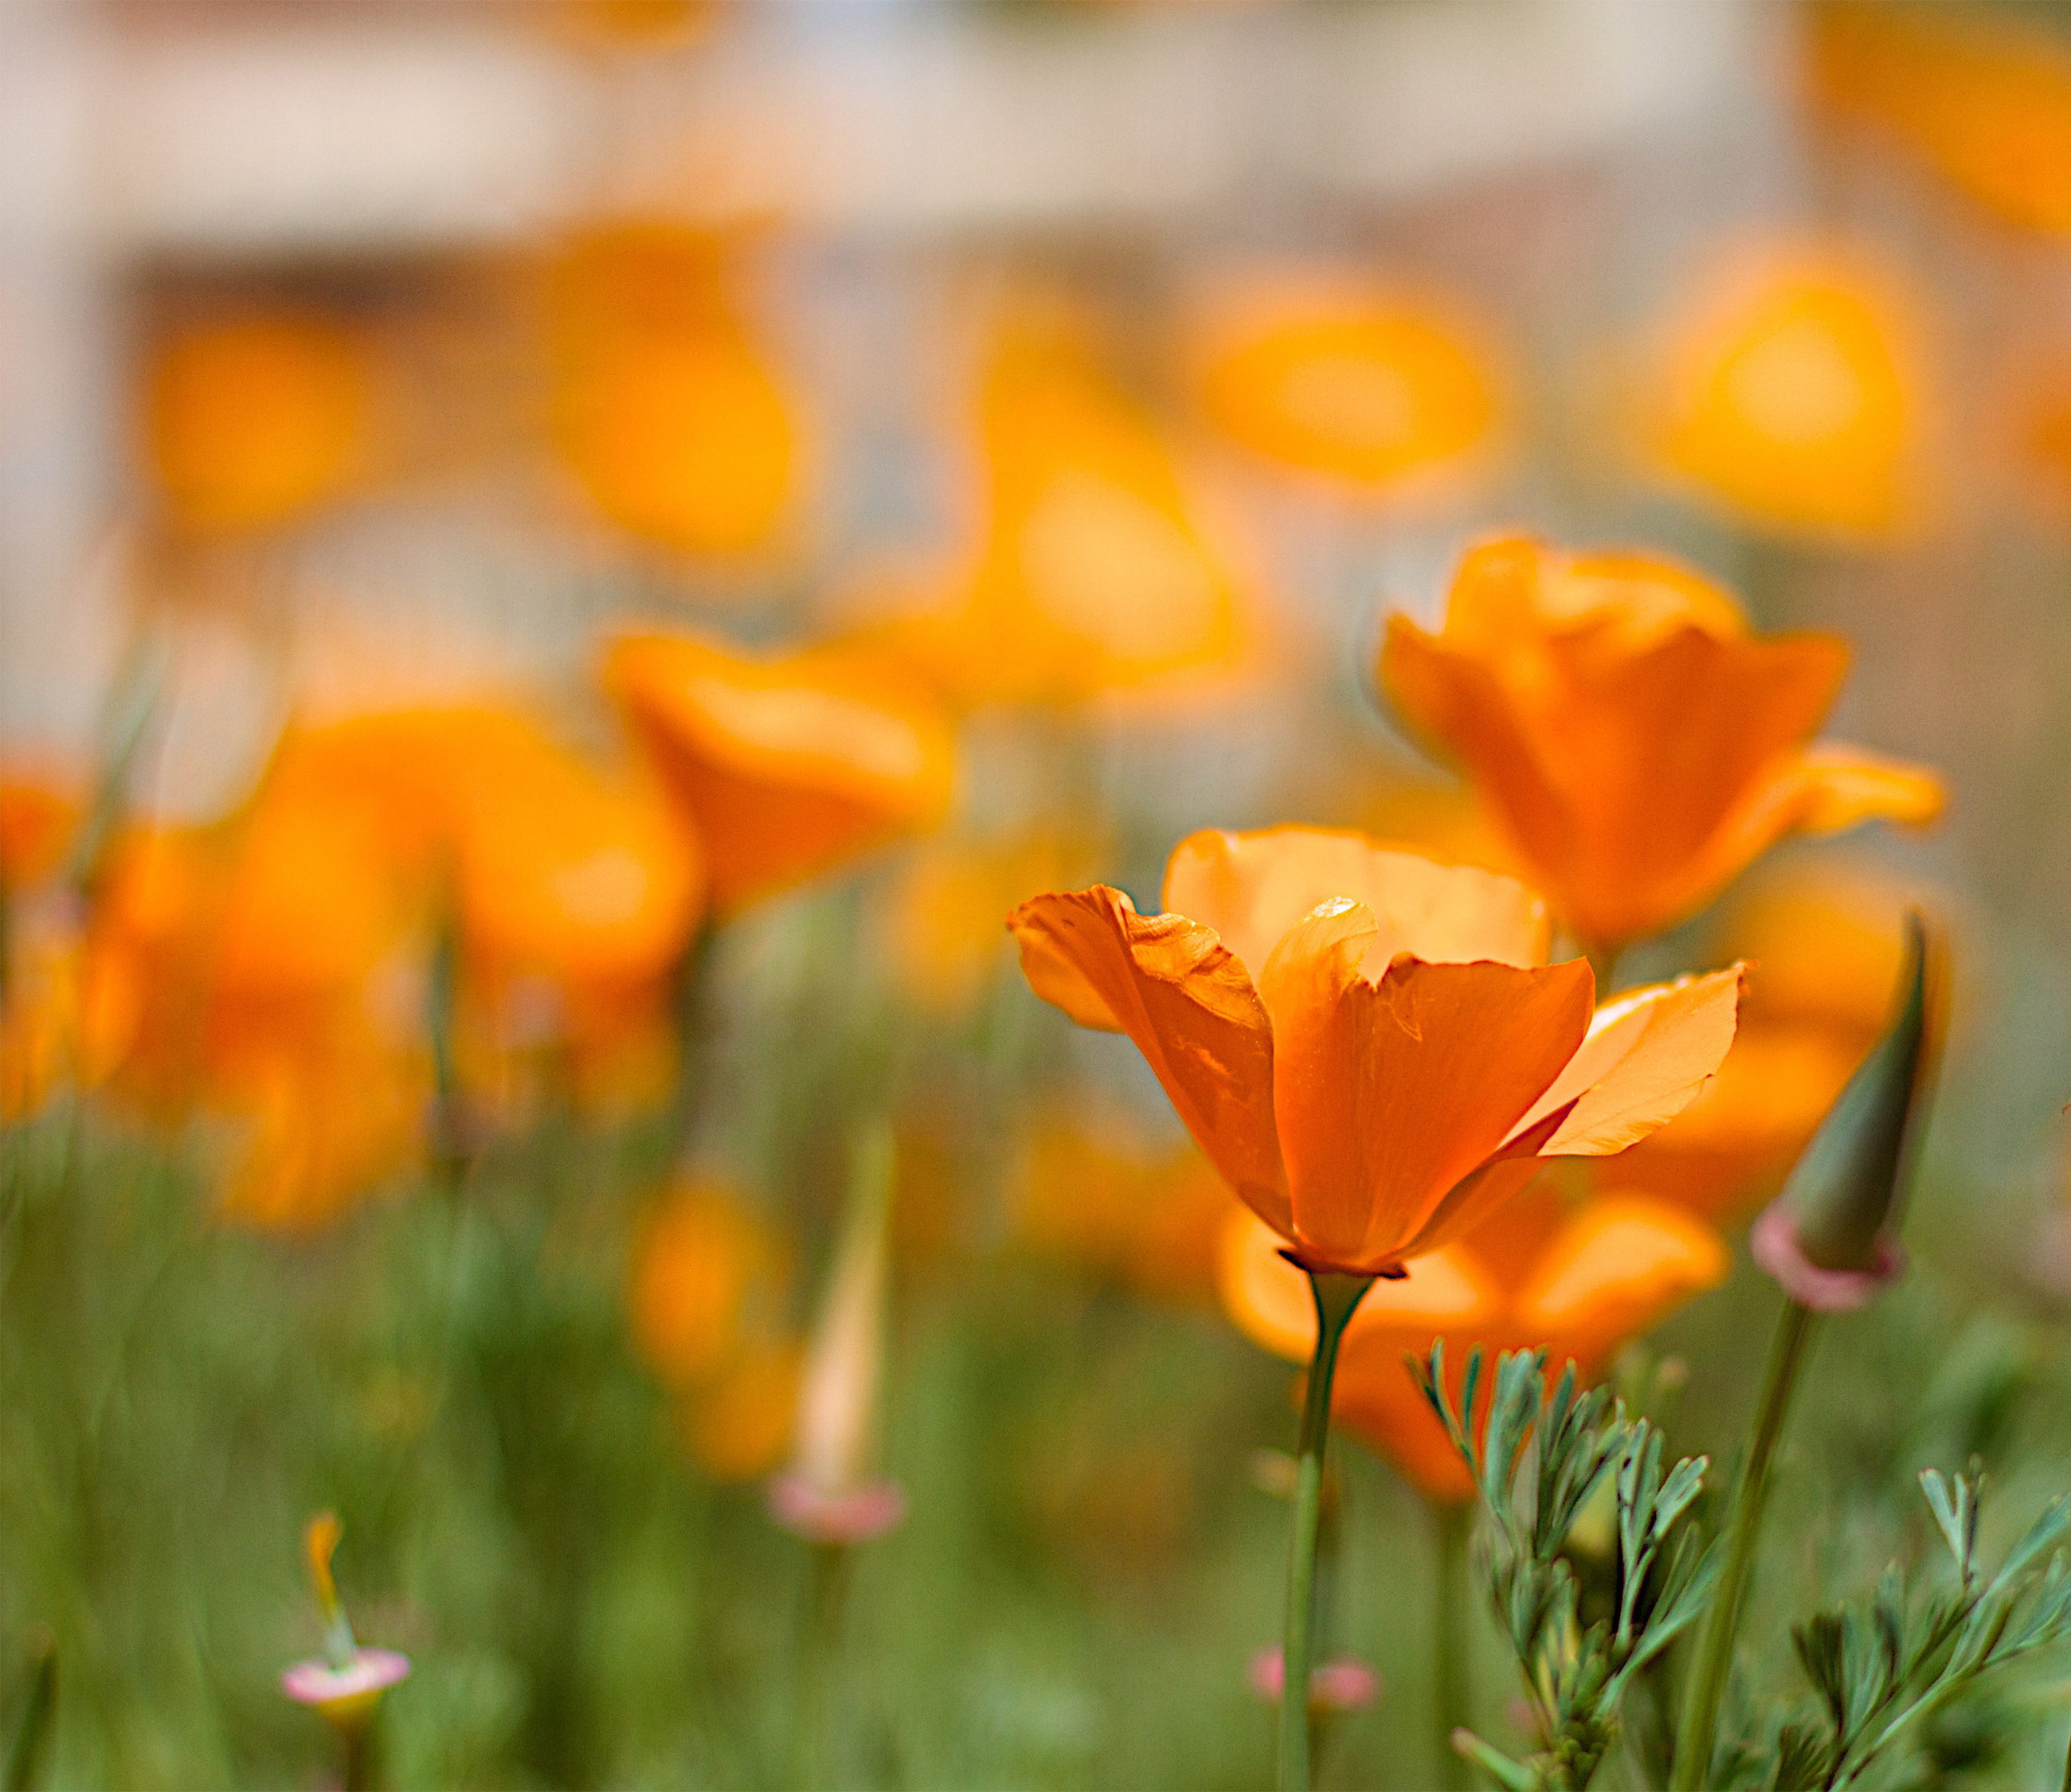 Orange flowers in a field